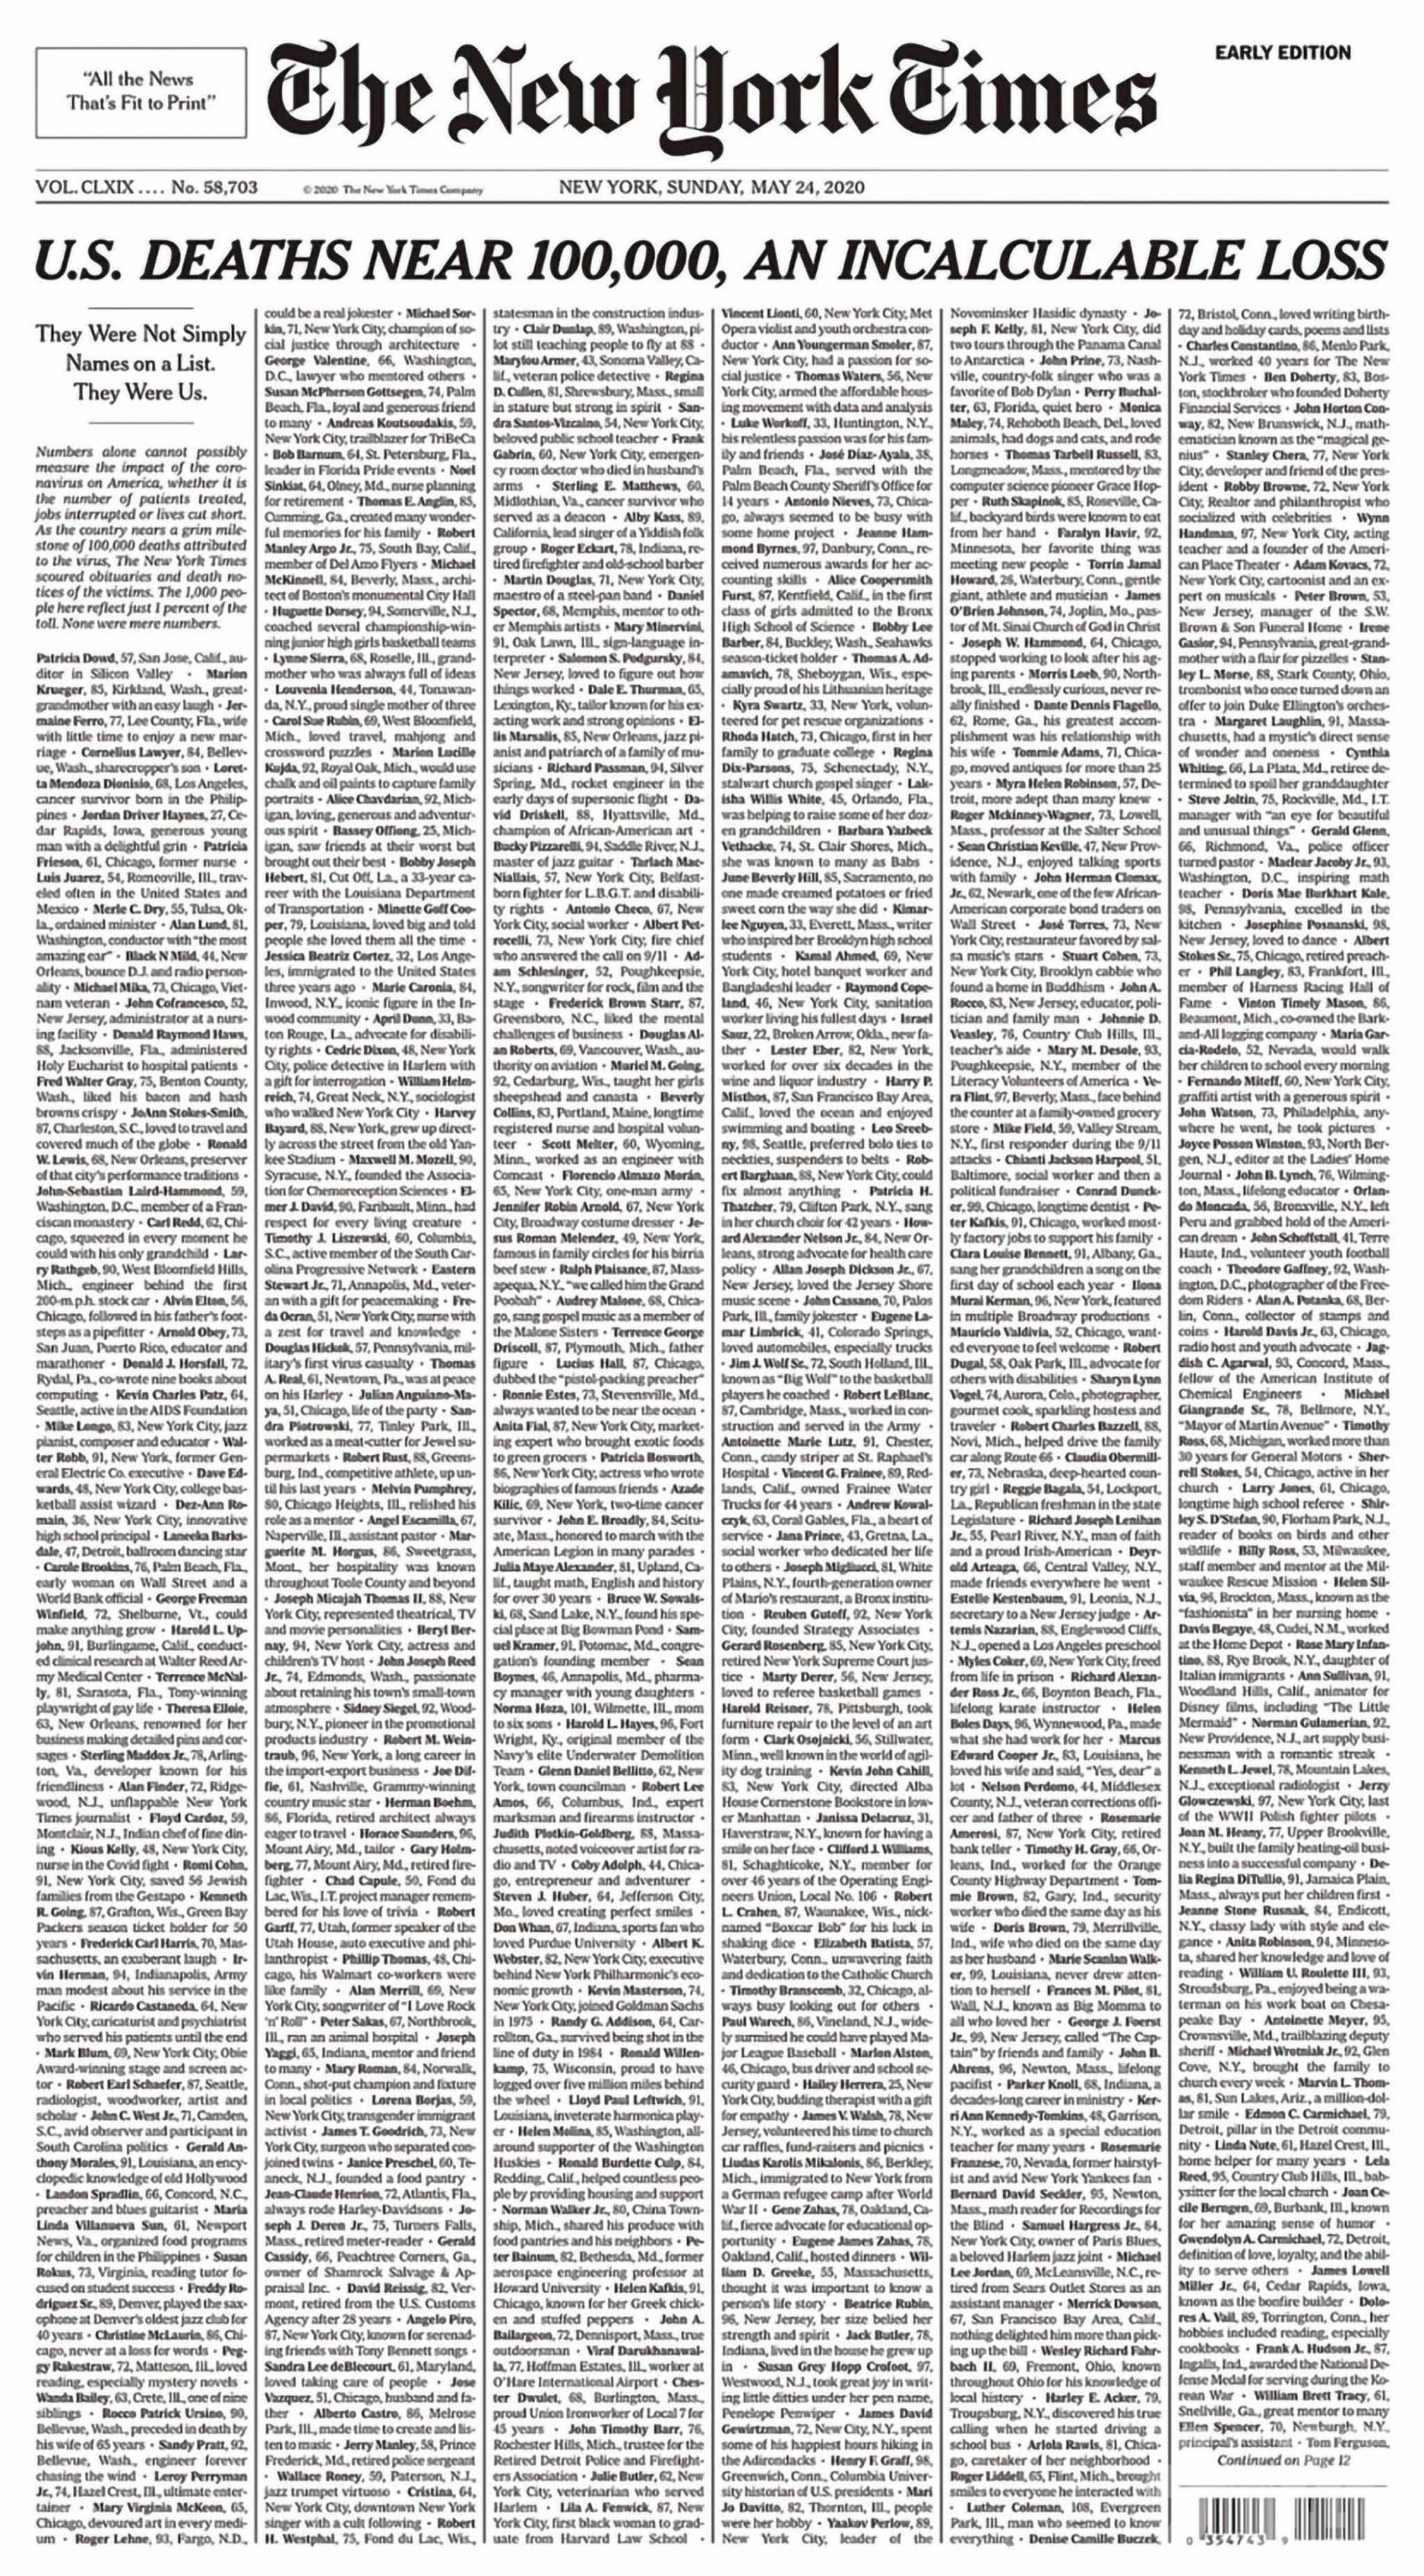 《紐時》頭版列千名死者名單